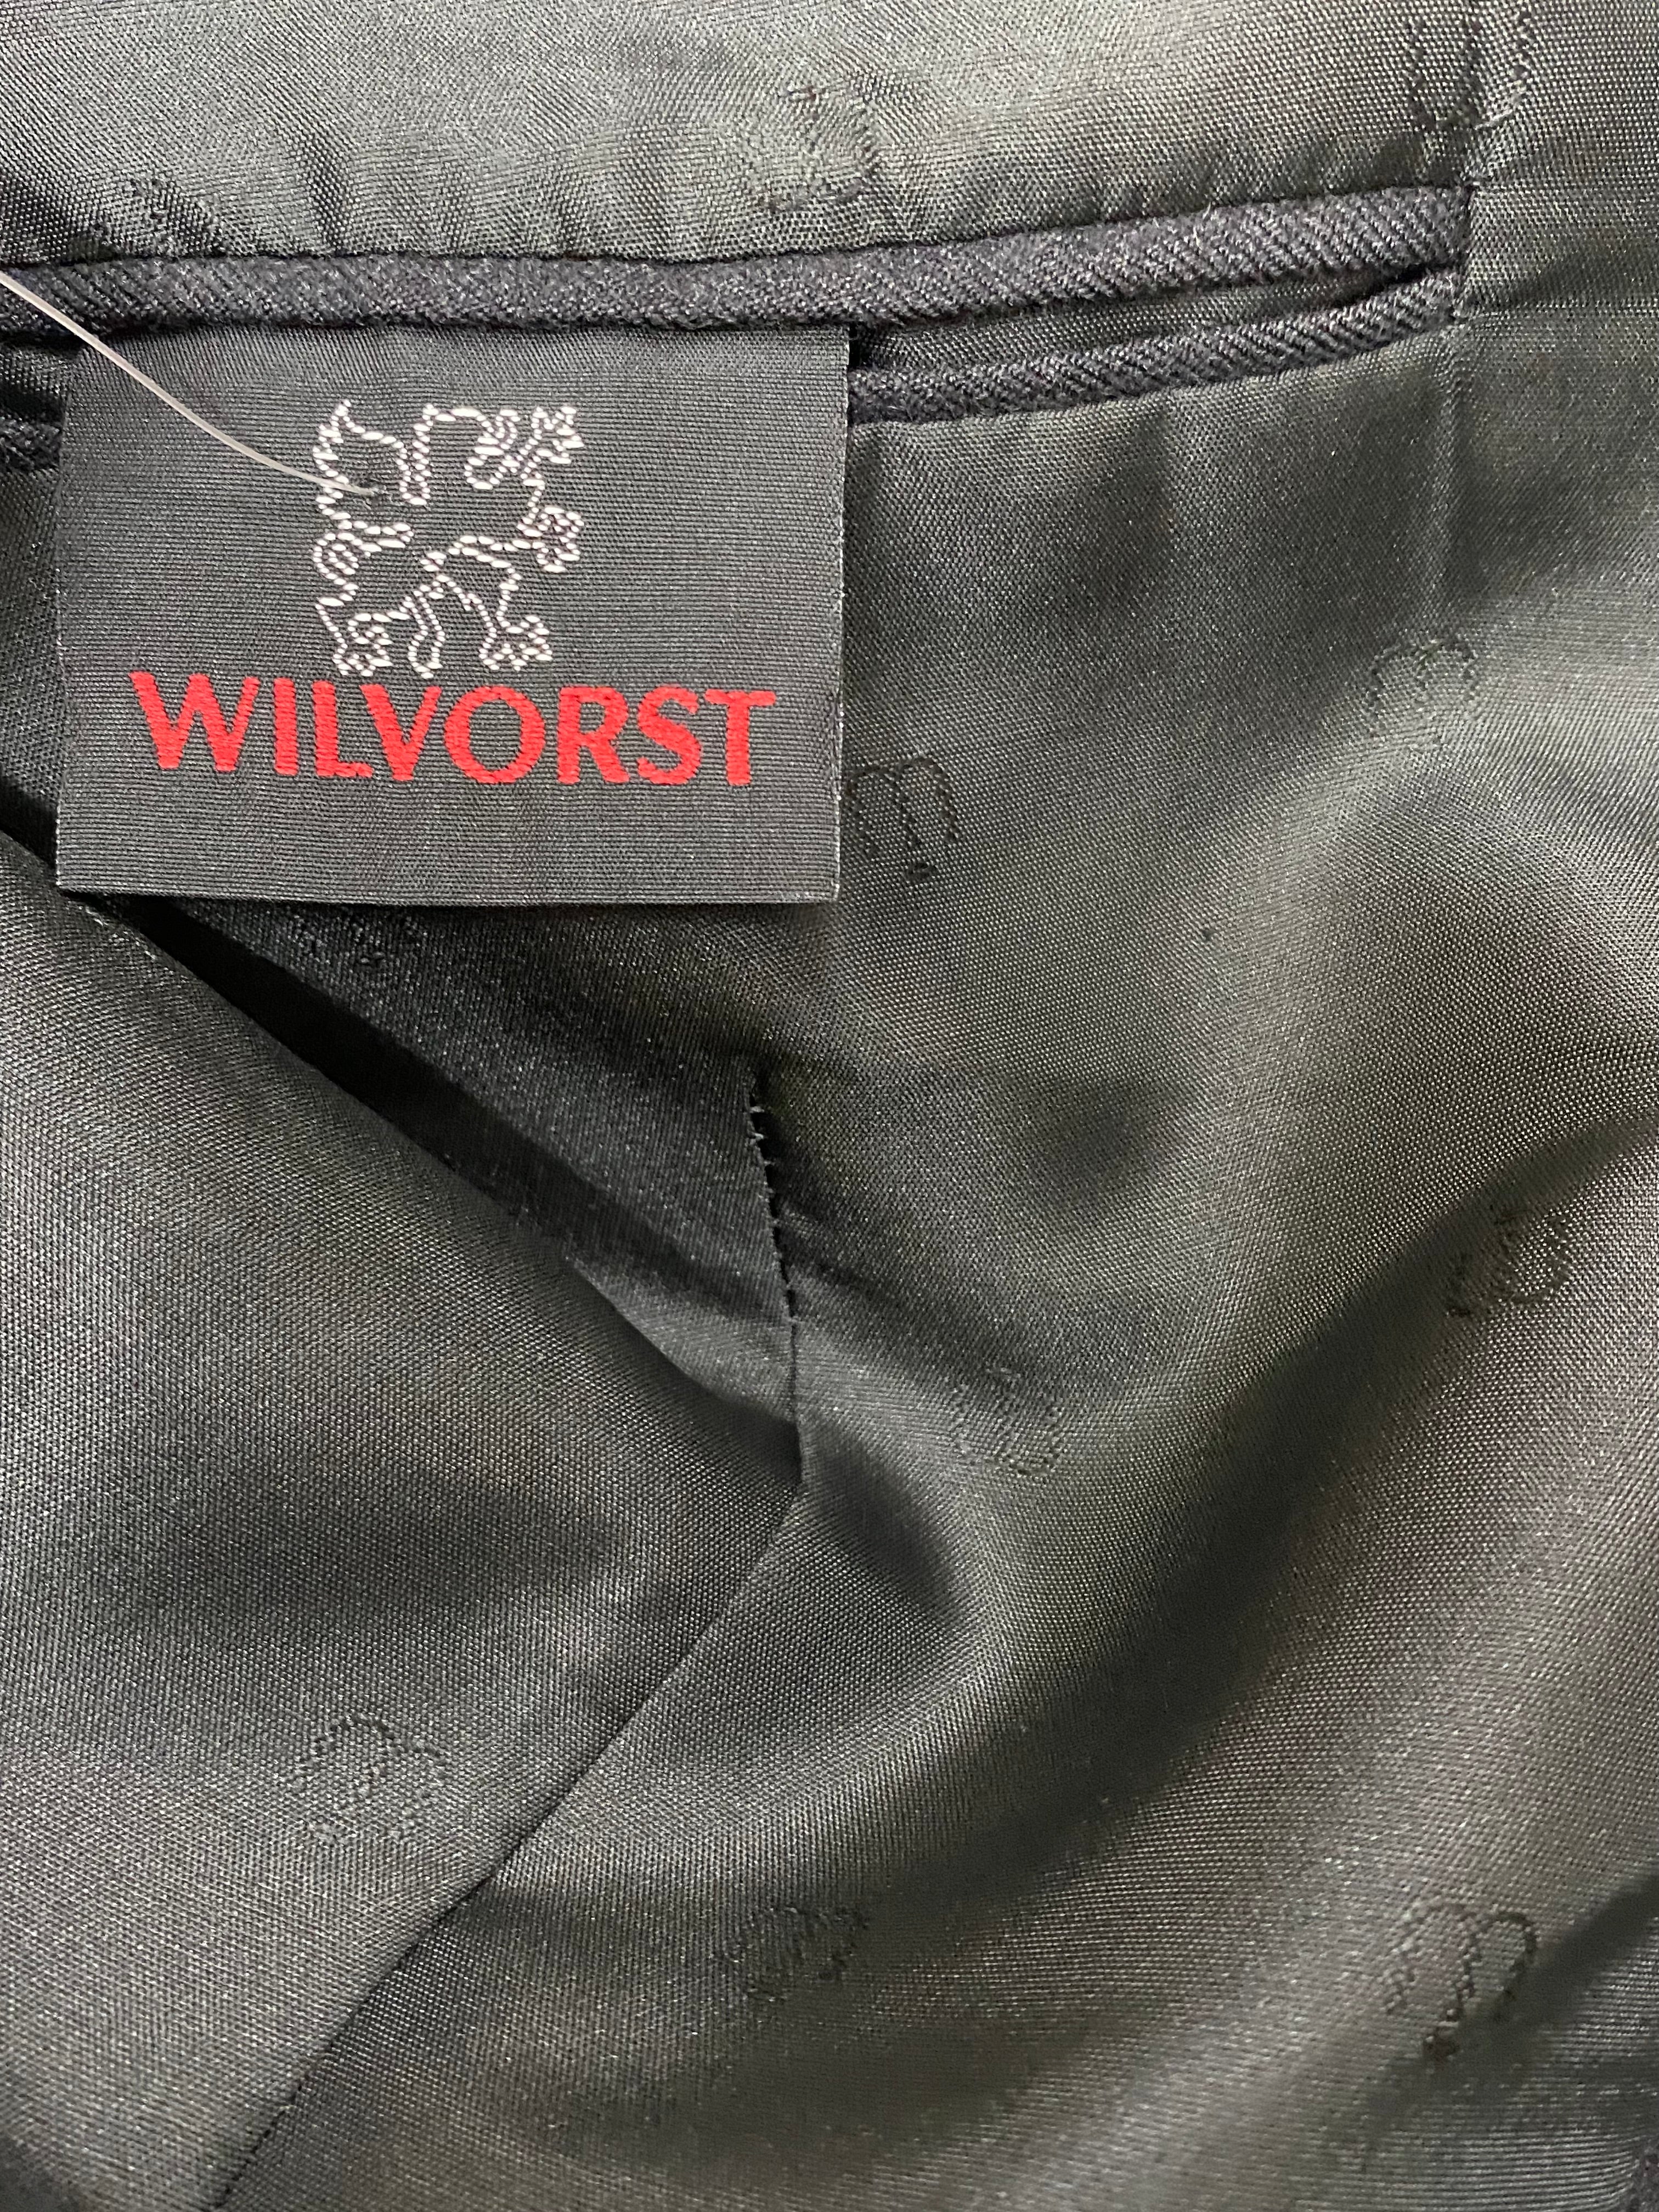 Vintage Cutaway Jacke antrazit Gr.102 von dem Hersteller Wilvorst